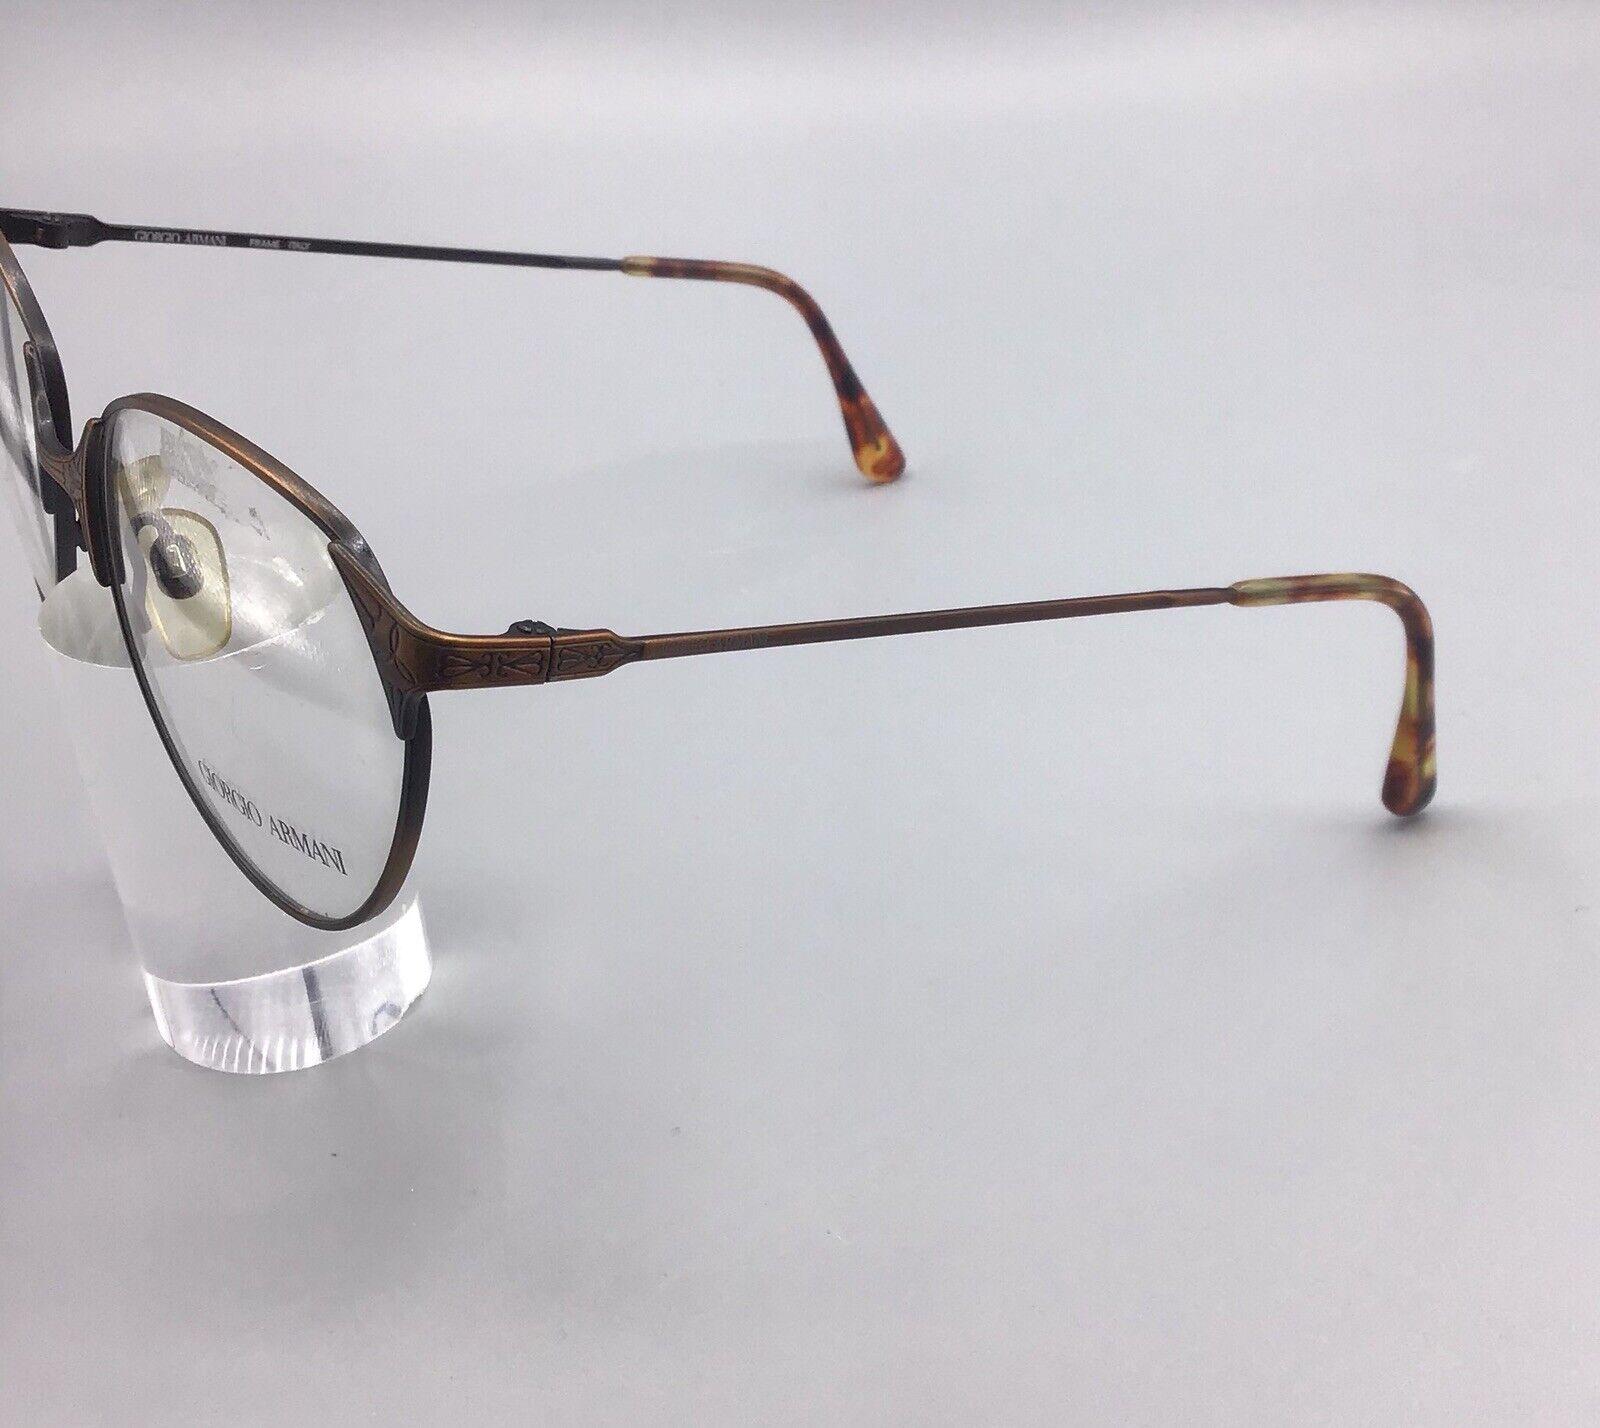 Giorgio Armani occhiale vintage 212 705 eyewear frame Italy brillen lunettes